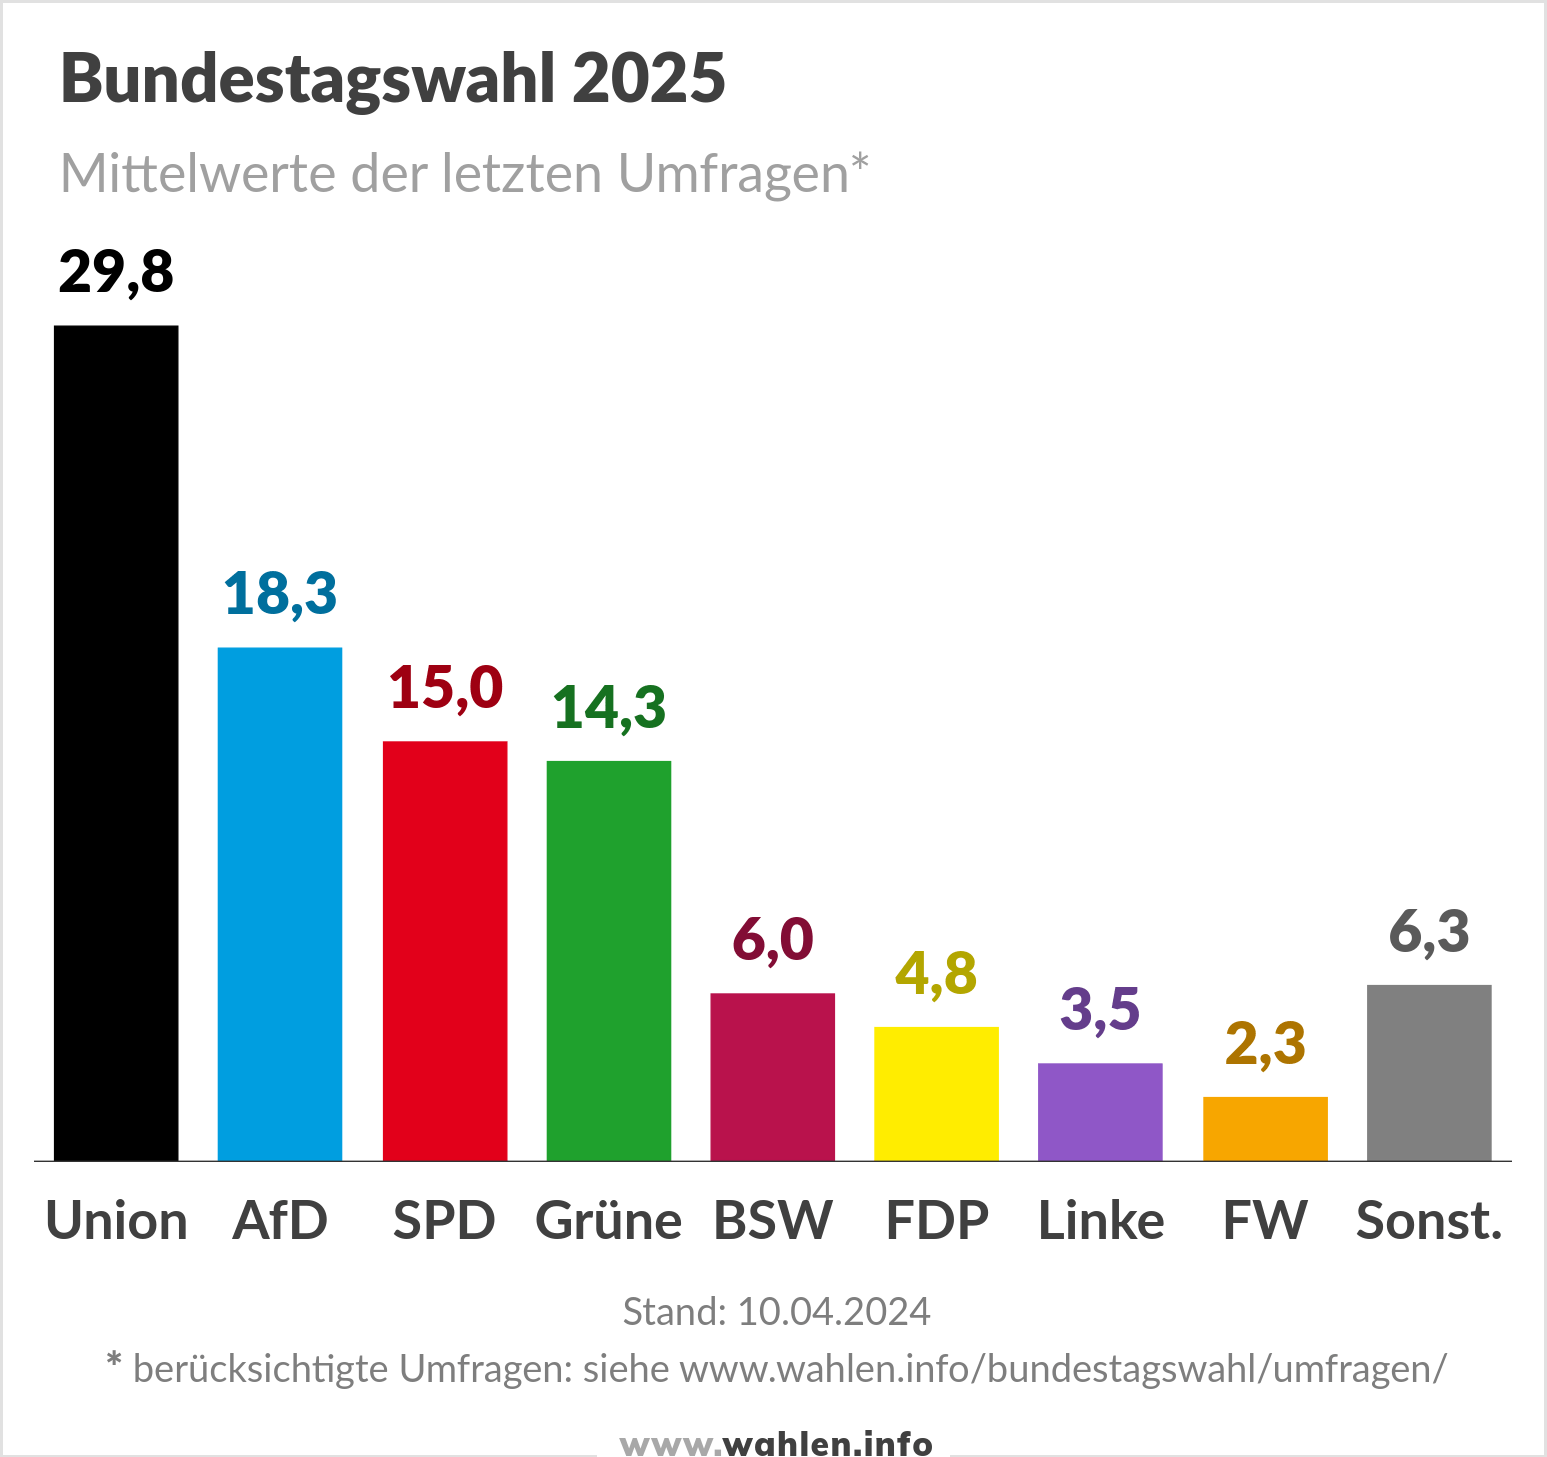 Bundestagswahl 2025, Umfragen mit FW und BSW